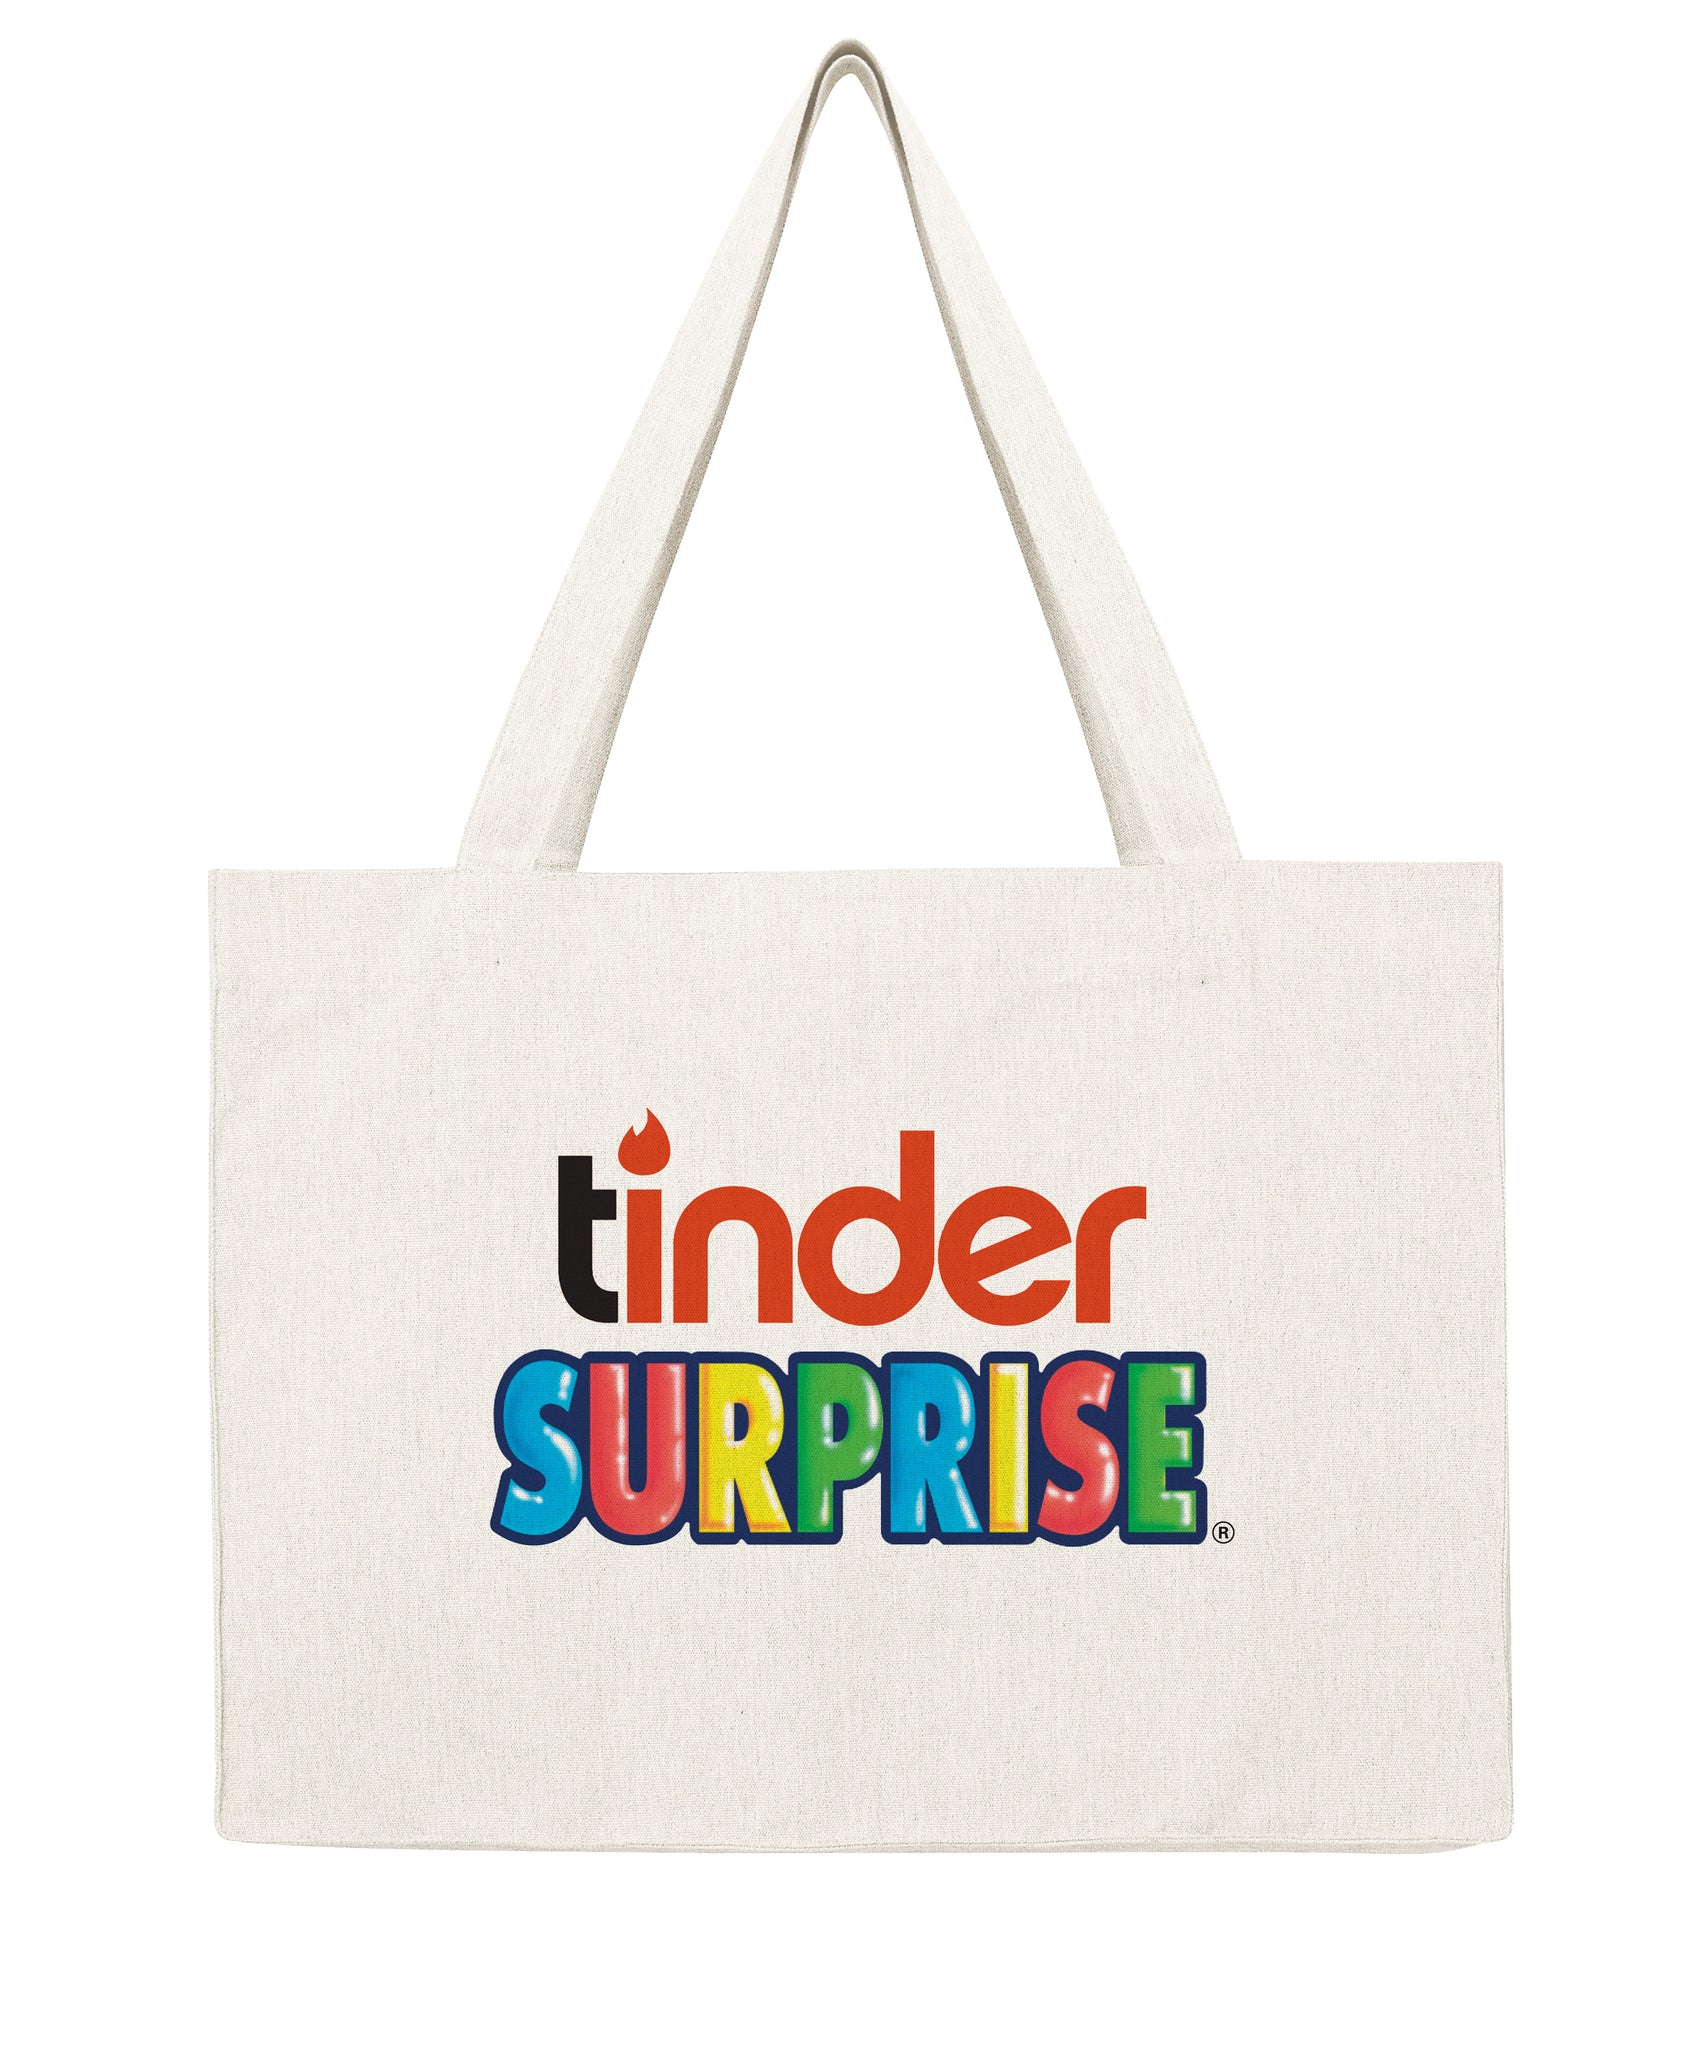 Tinder surprise - Shopping bag-Sacs-Atelier Amelot